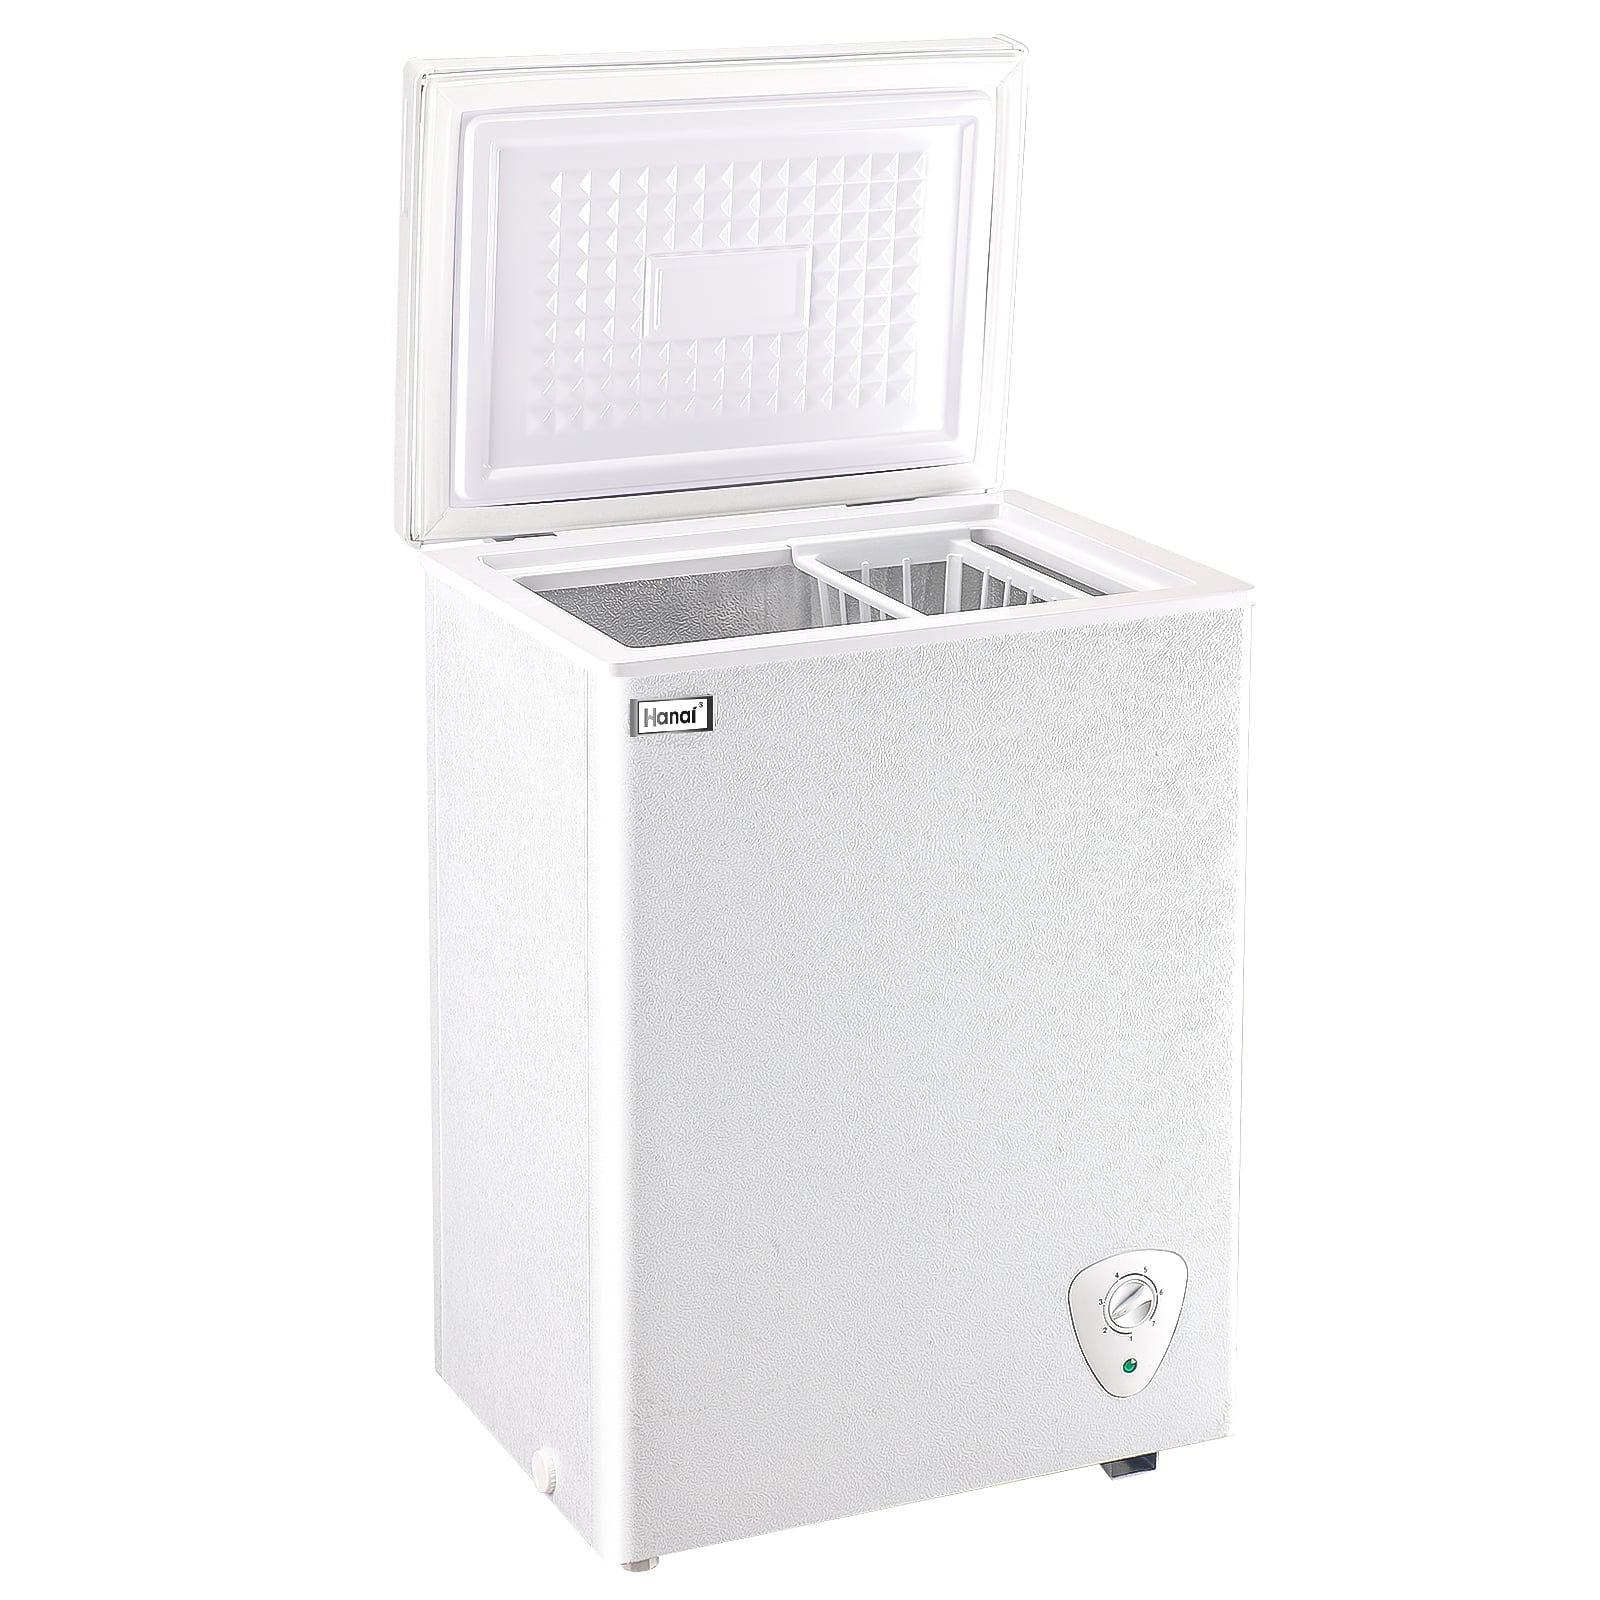 WANAI Congelador de pecho de 3.5 pies cúbicos, mini congeladores profundos  pequeños con termostato ajustable, congelador de puerta abierta, compresor